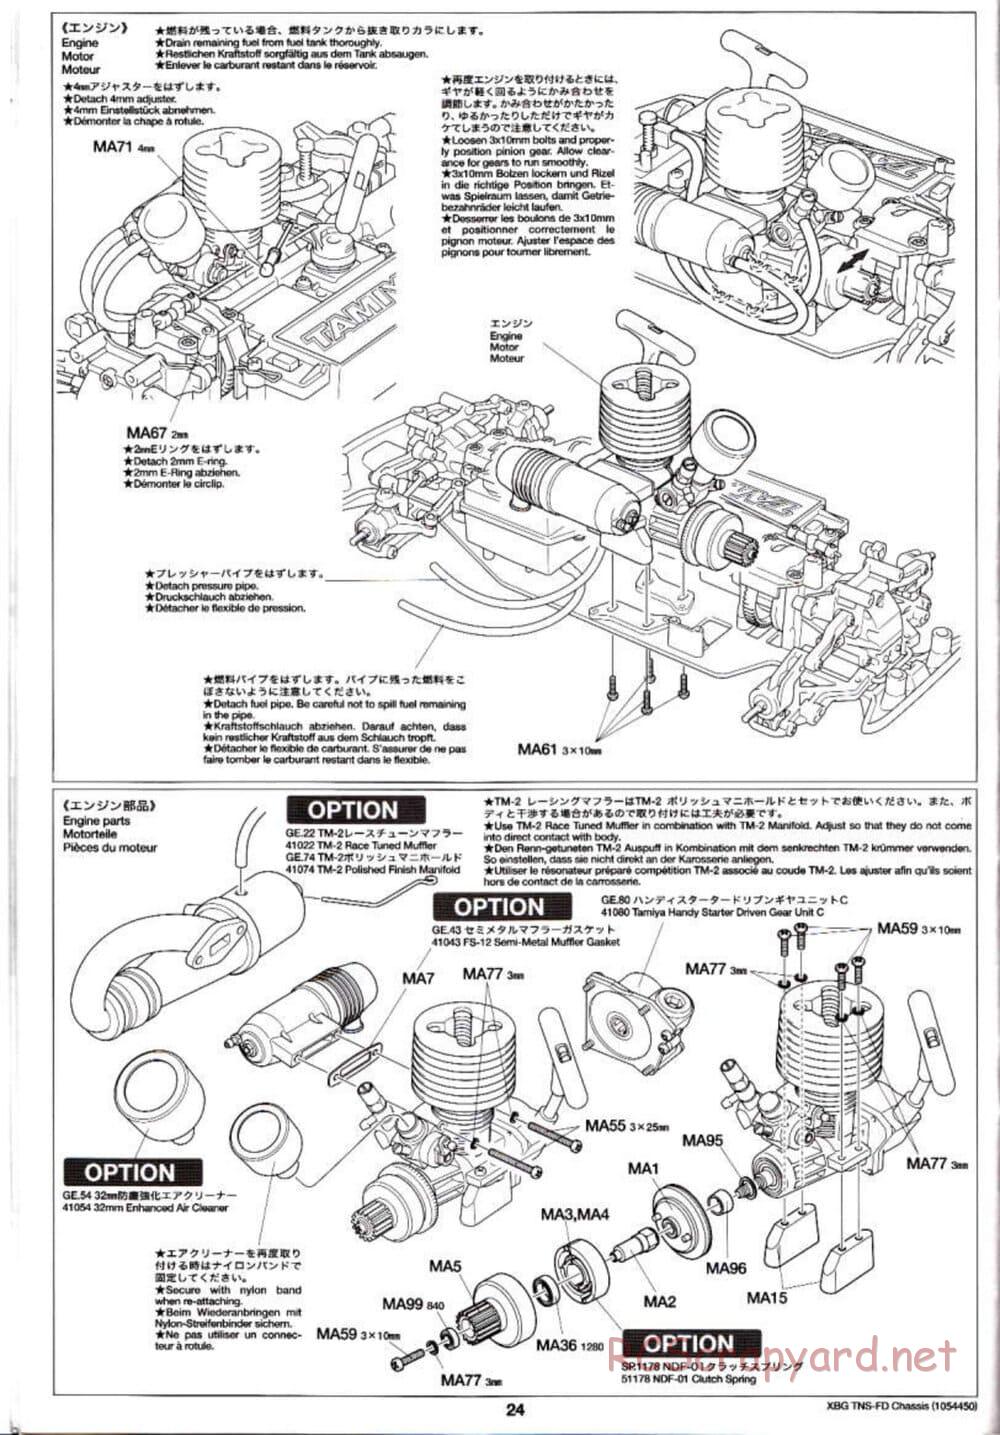 Tamiya - TNS-FD Chassis - Manual - Page 24